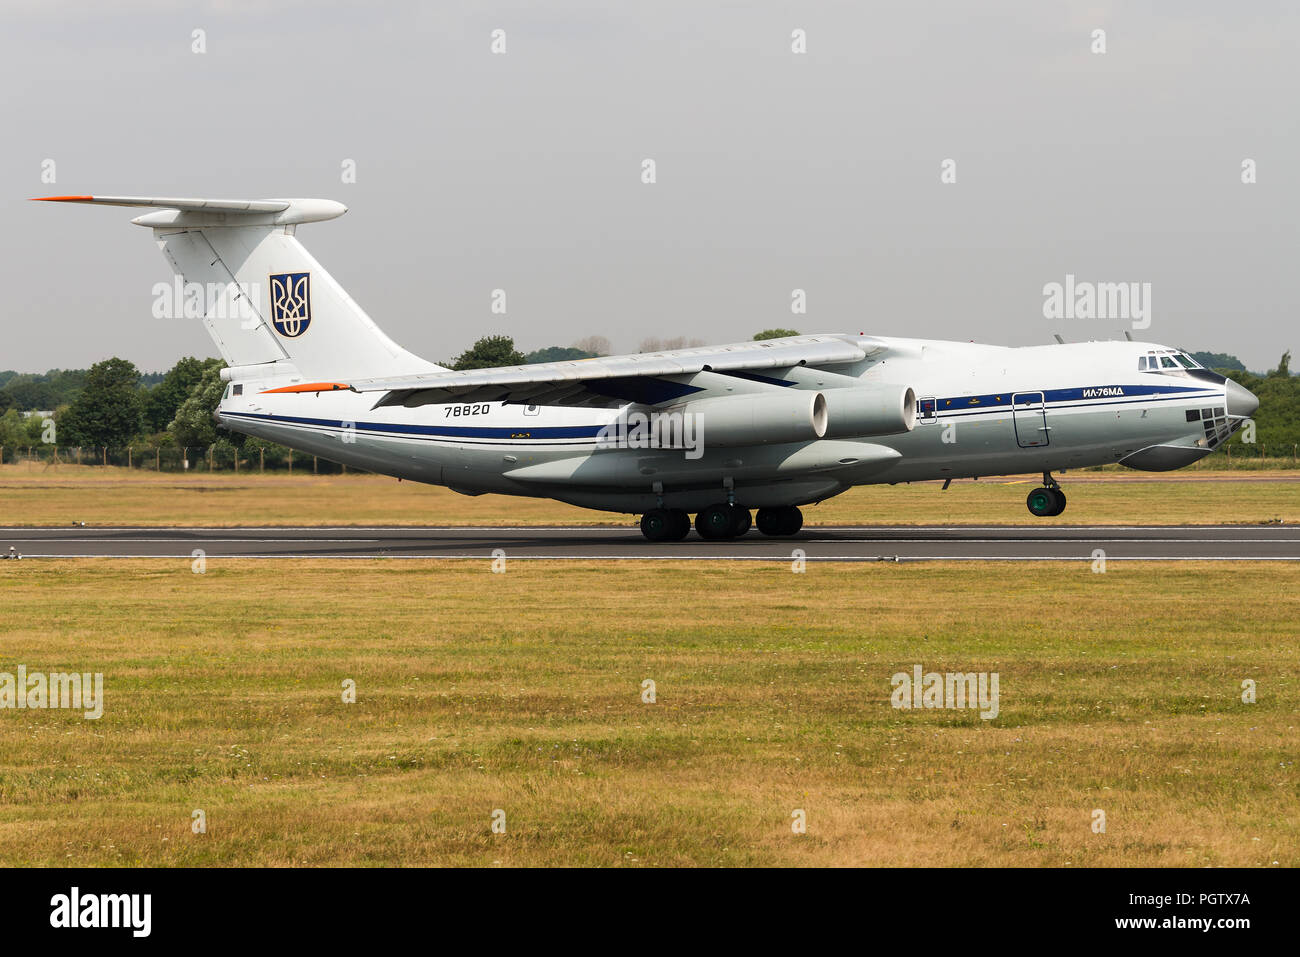 Un Iliouchine Il-76 'Franc' les avions de transport militaire de l'Armée de l'air ukrainienne au Royal International Air Tattoo 2018. Banque D'Images